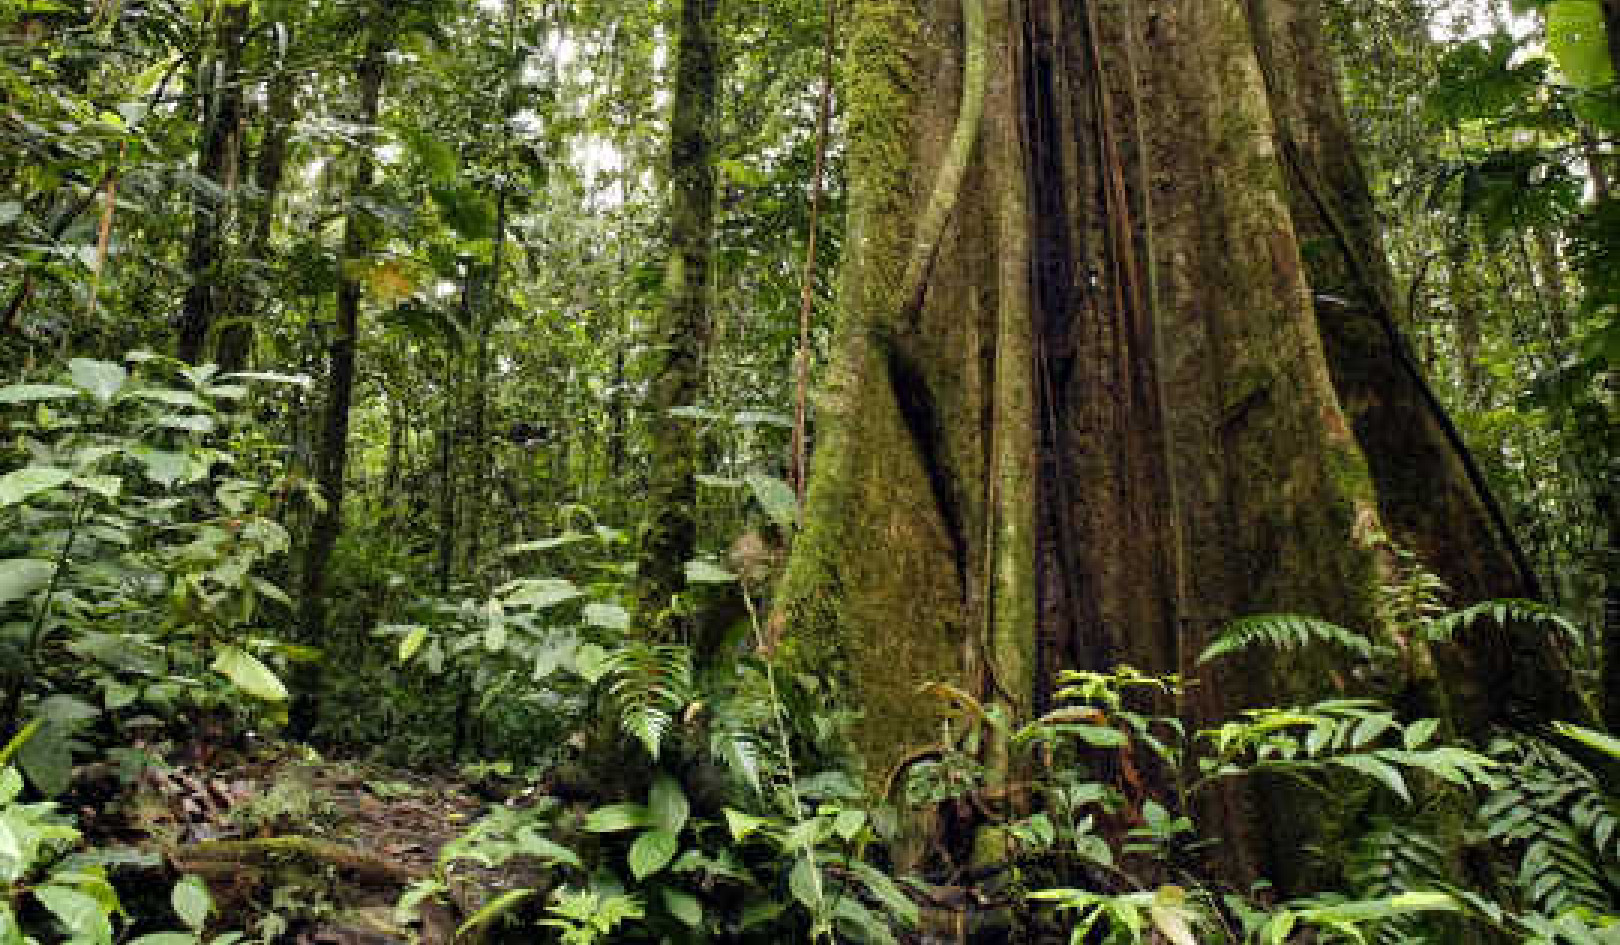 La foresta amazzonica è sull'orlo del collasso?